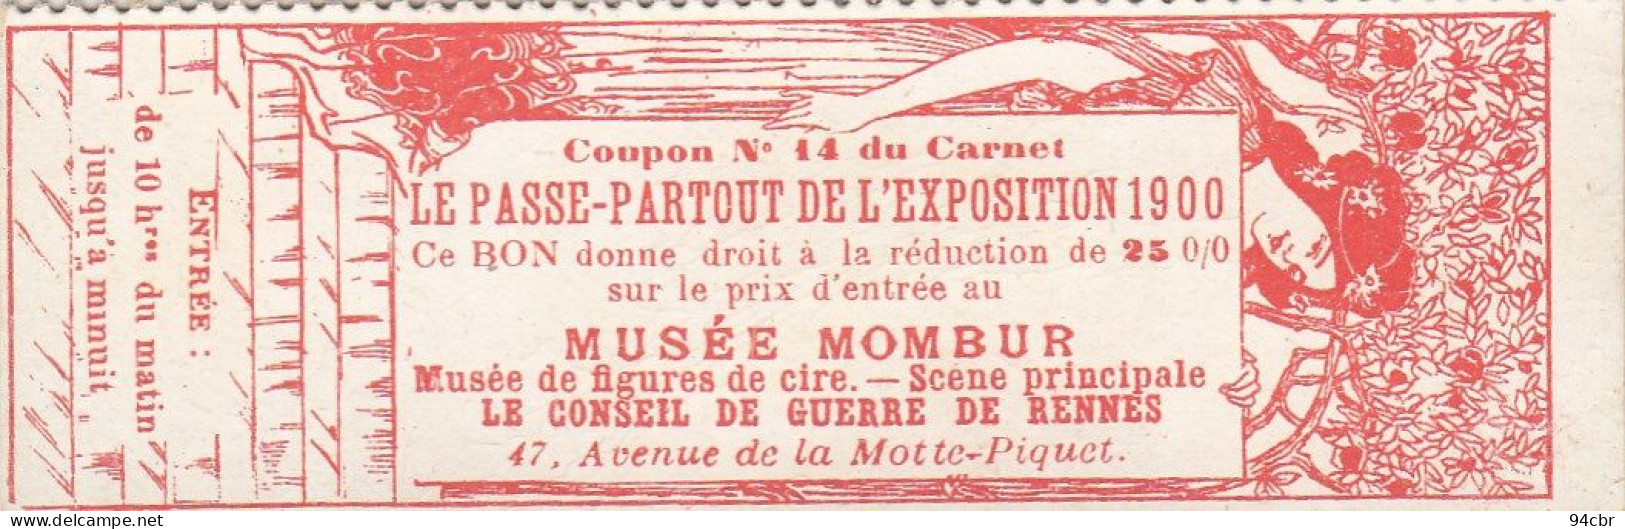 CPA (exposition 1900)  PARIS 15e  MUSEE MOMBUR  47 Avenue De La Motte Piquet (illus ) B.bur Theme - Ausstellungen